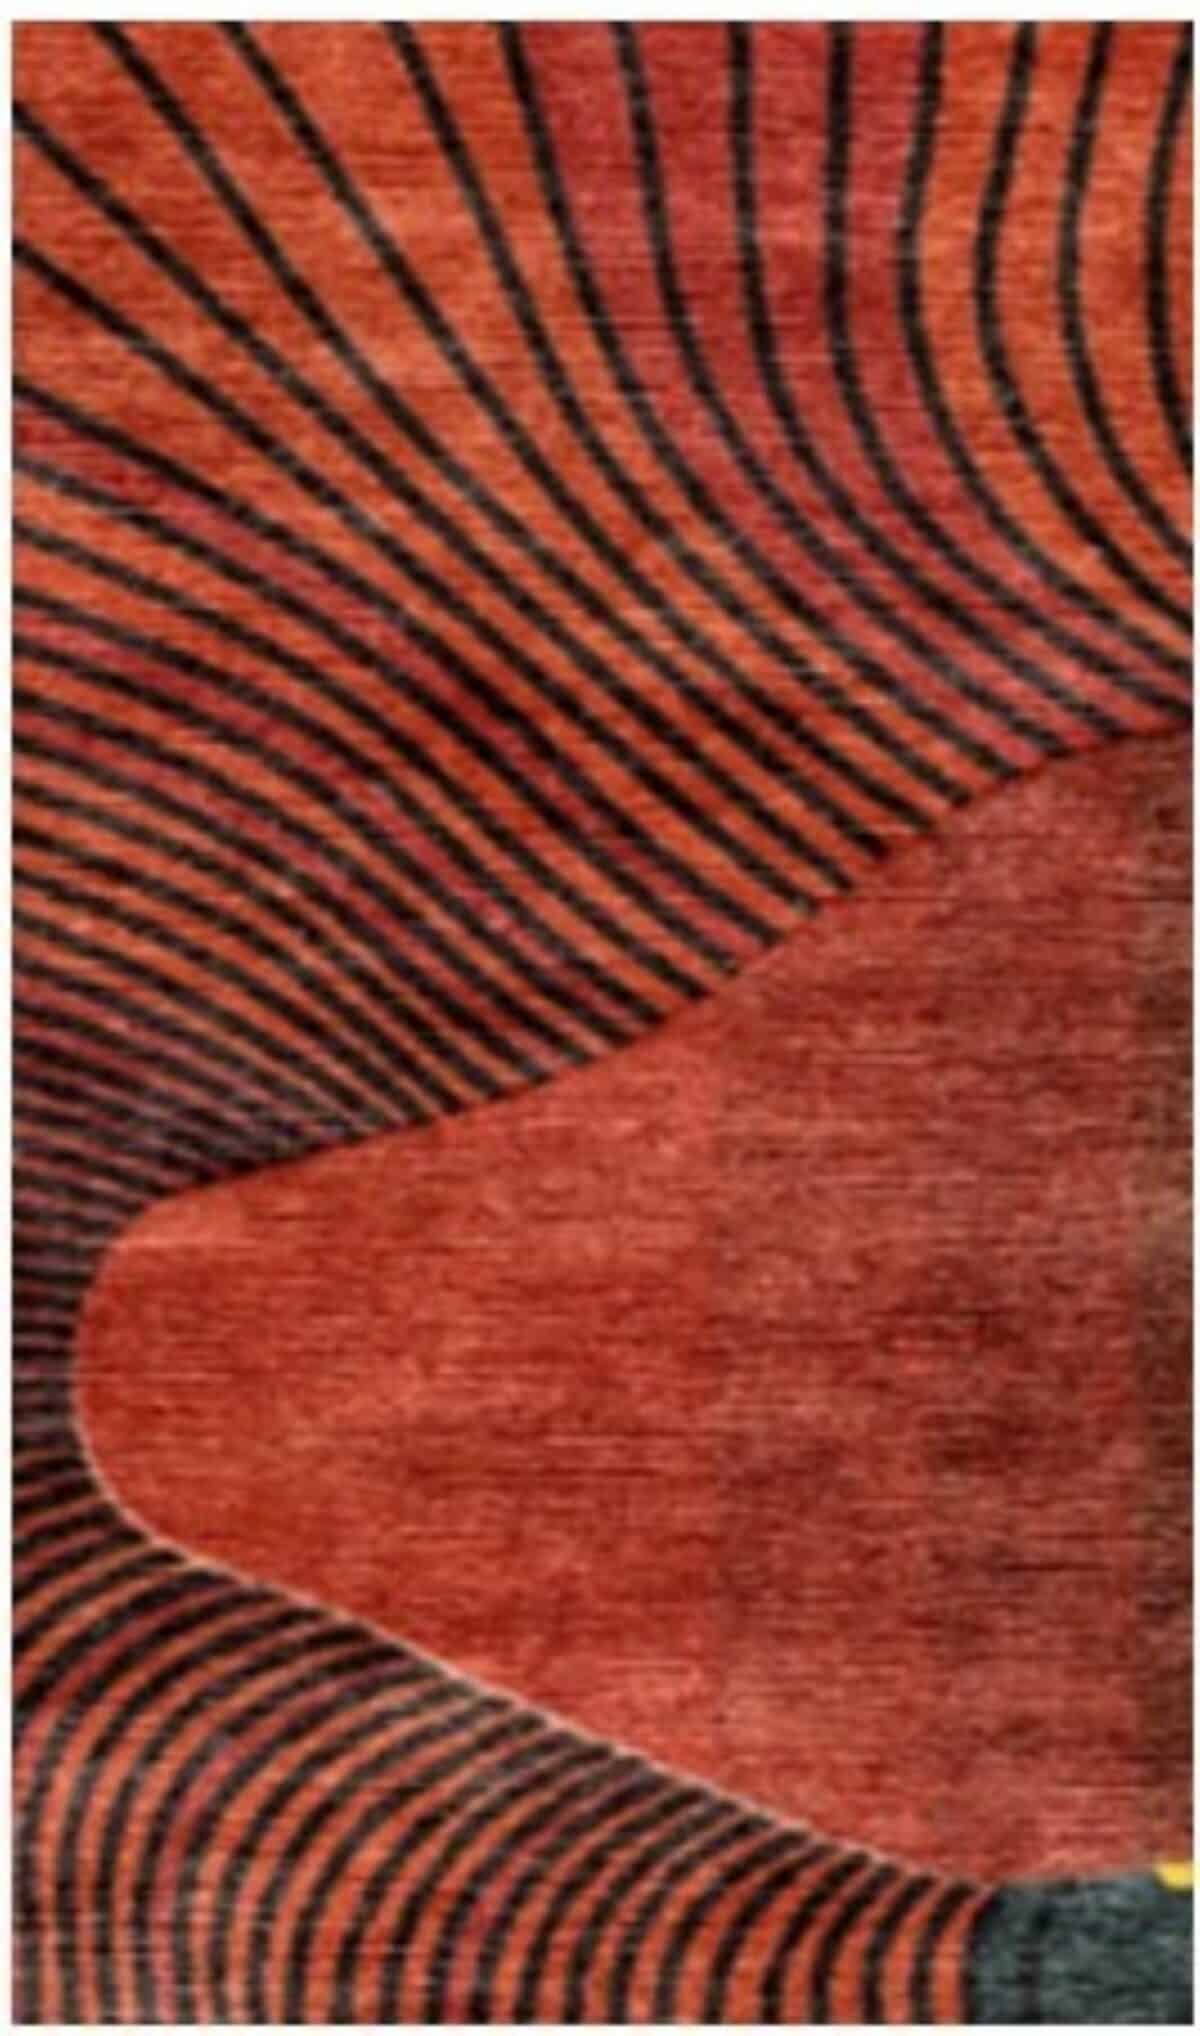 שטיח רצפה בהתאמה אישית בצורת צבעוני הרים